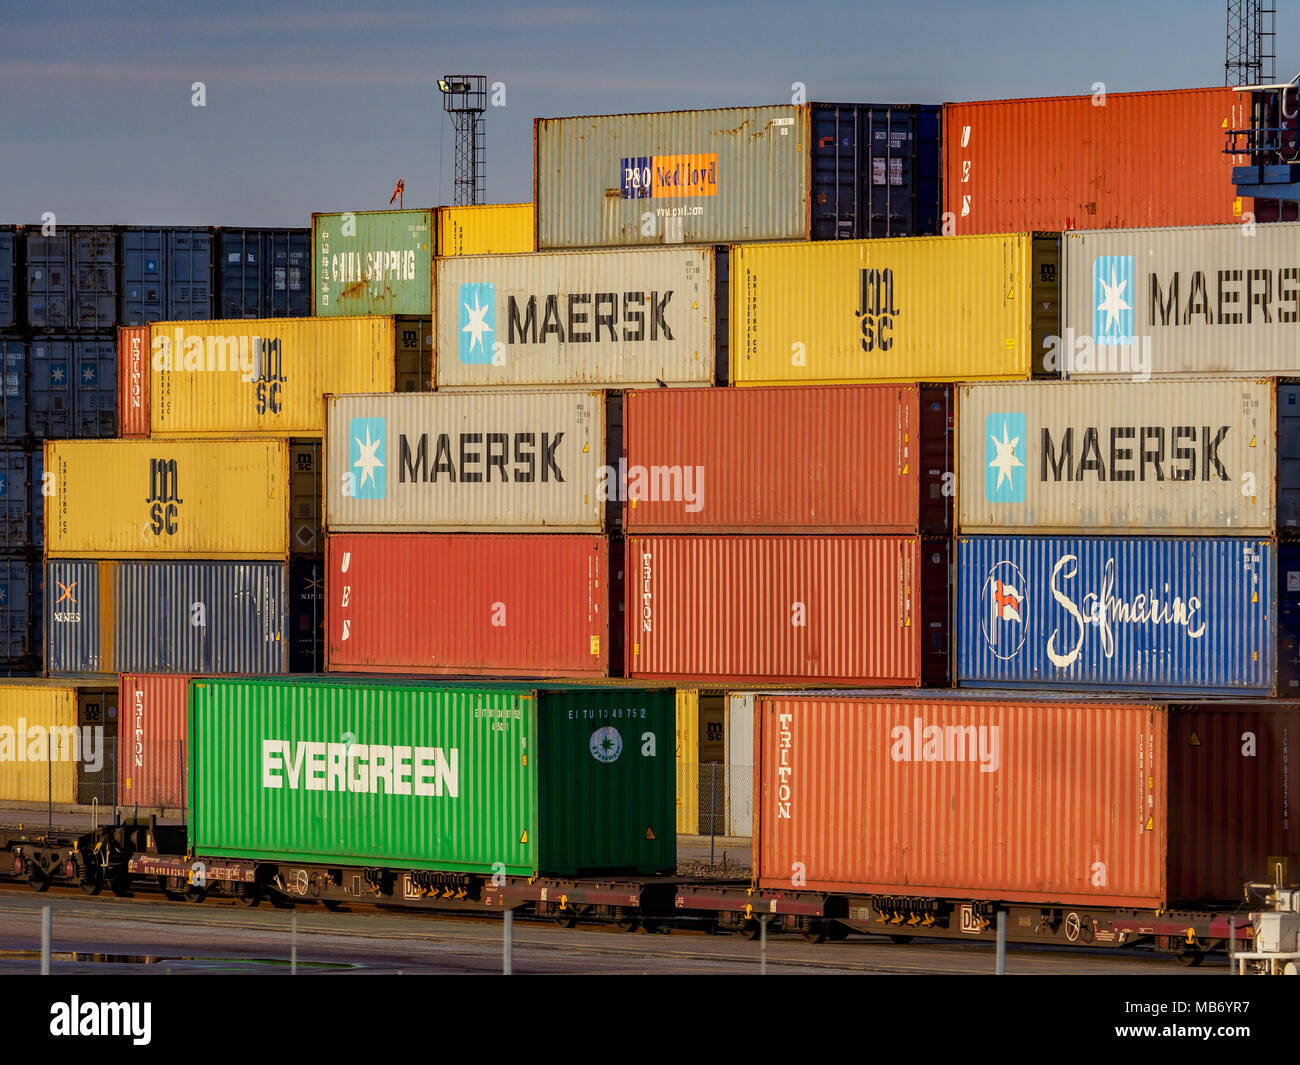 Internationaler Handel - intermodaler Containerverkehr - Versandcontainer werden in Felixstowe, dem größten Containerhafen Großbritanniens, auf Schienenfahrzeuge geladen Stockfoto